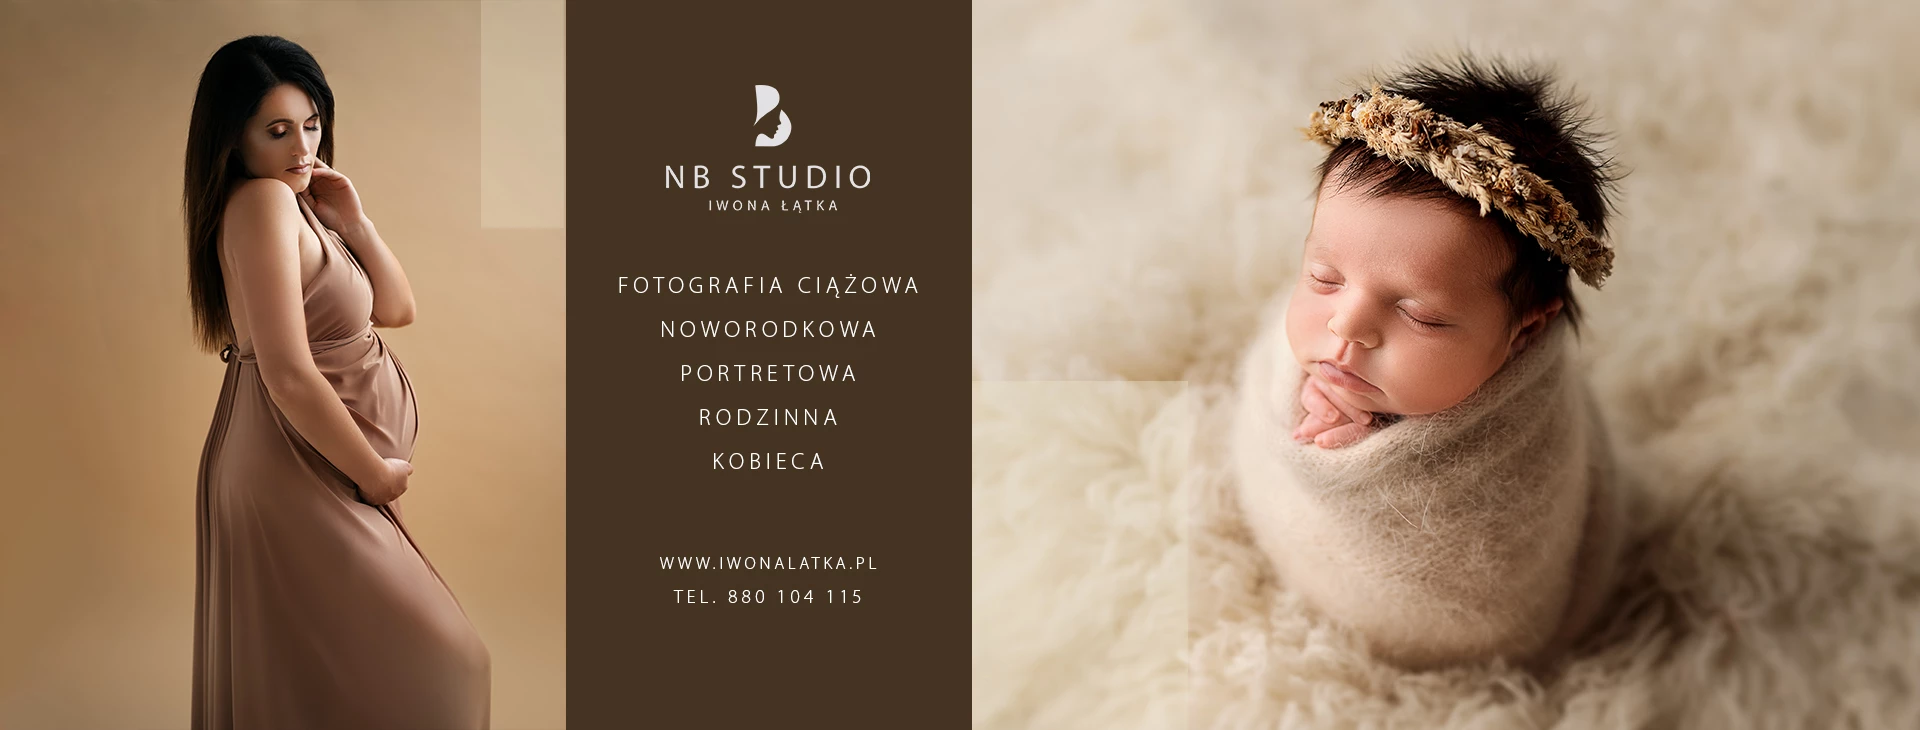 portfolio zdjecia znany fotograf nb-studio-iwona-latka-witek